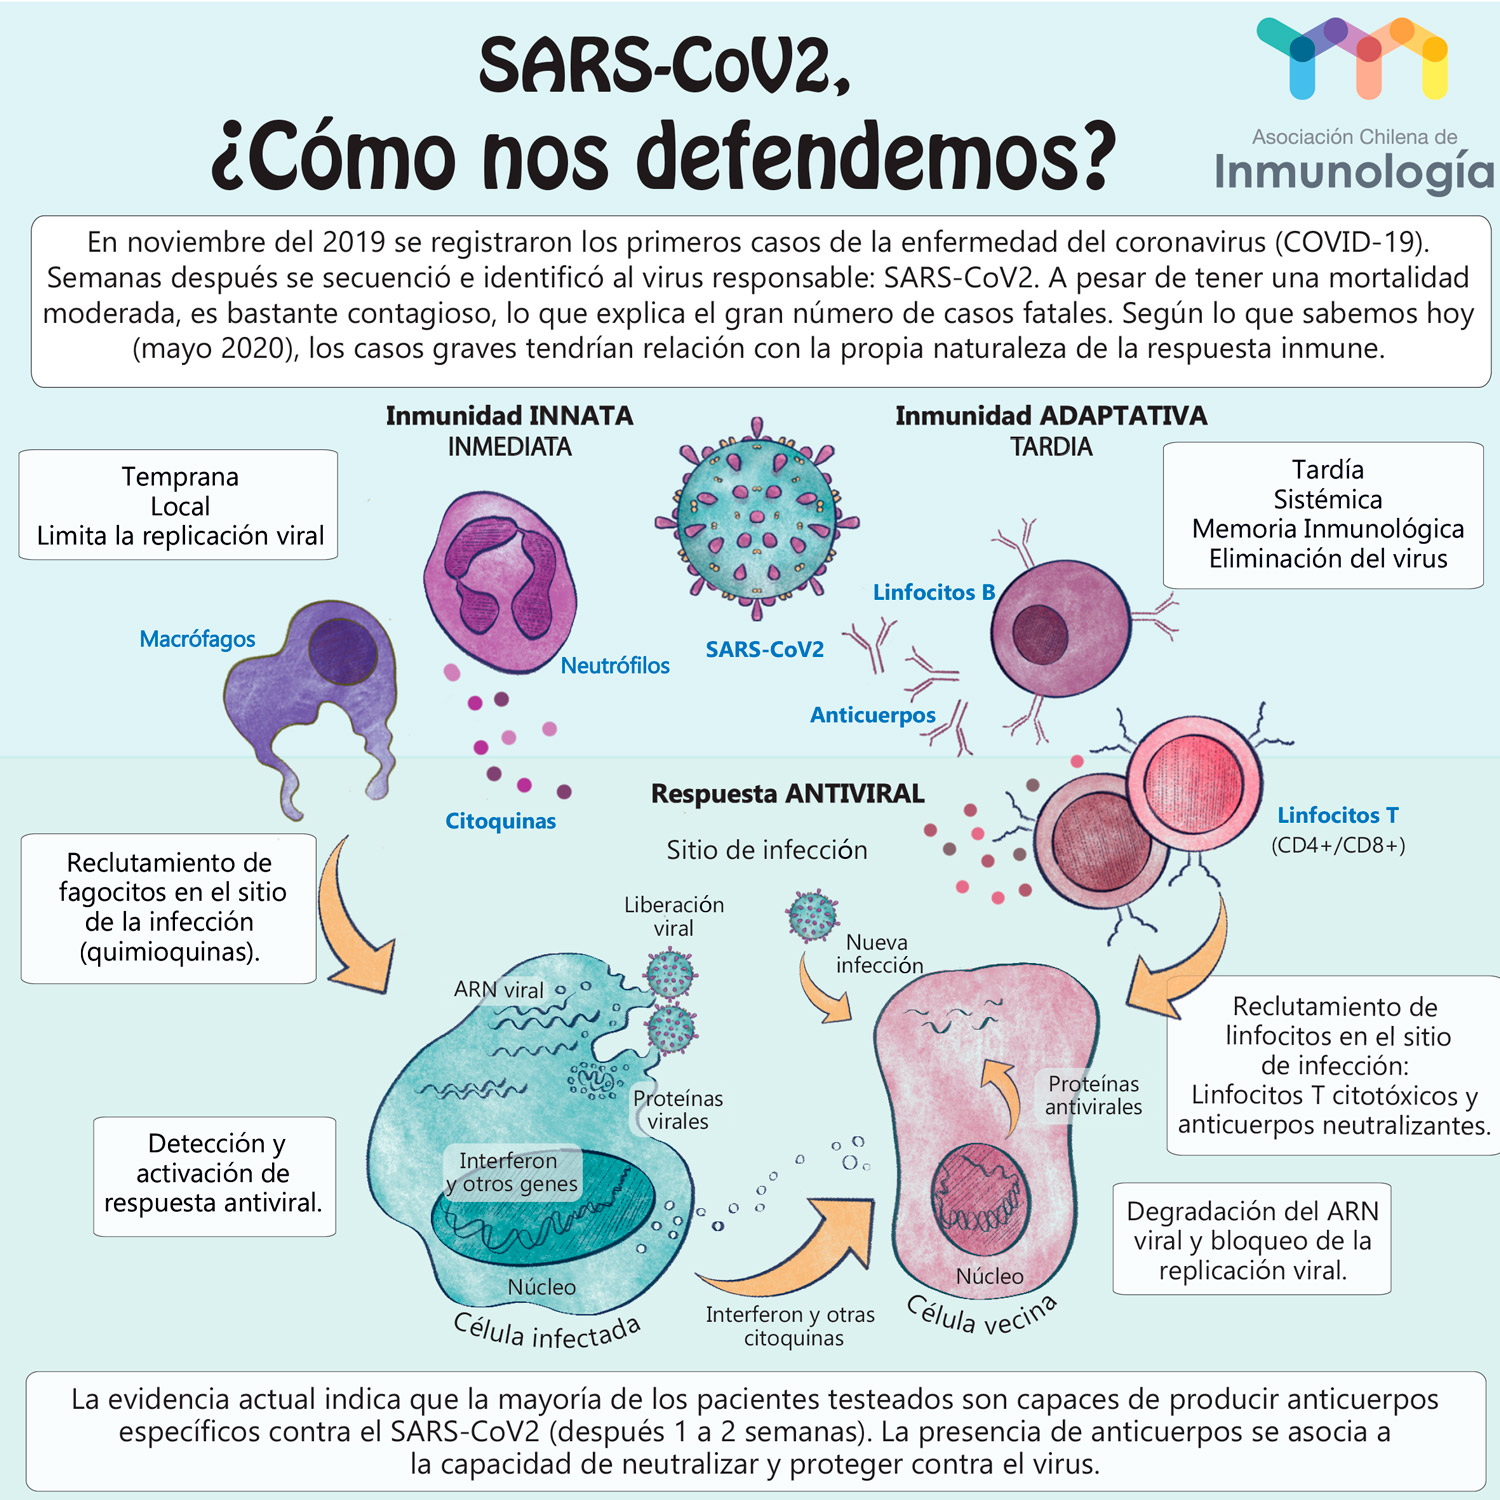 SARS-CoV-2, ¿Cómo nos defendemos? graphic